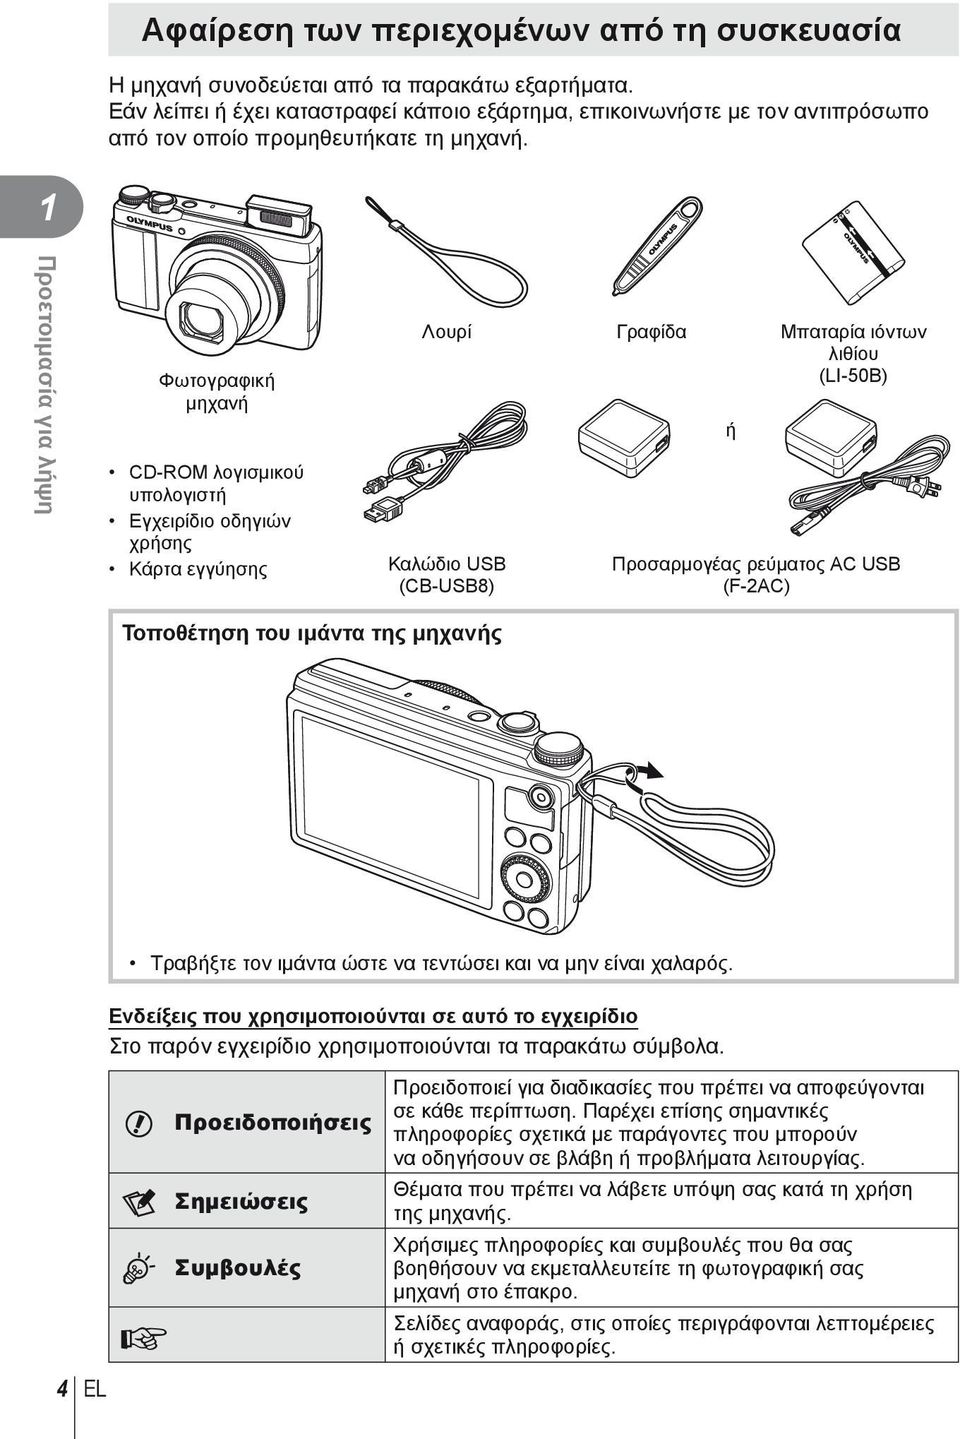 1 Προετοιμασία για λήψη Φωτογραφική μηχανή CD-ROM λογισμικού υπολογιστή Εγχειρίδιο οδηγιών χρήσης Κάρτα εγγύησης Λουρί Γραφίδα Μπαταρία ιόντων λιθίου (LI-50B) Καλώδιο USB (CB-USB8) ή Προσαρμογέας